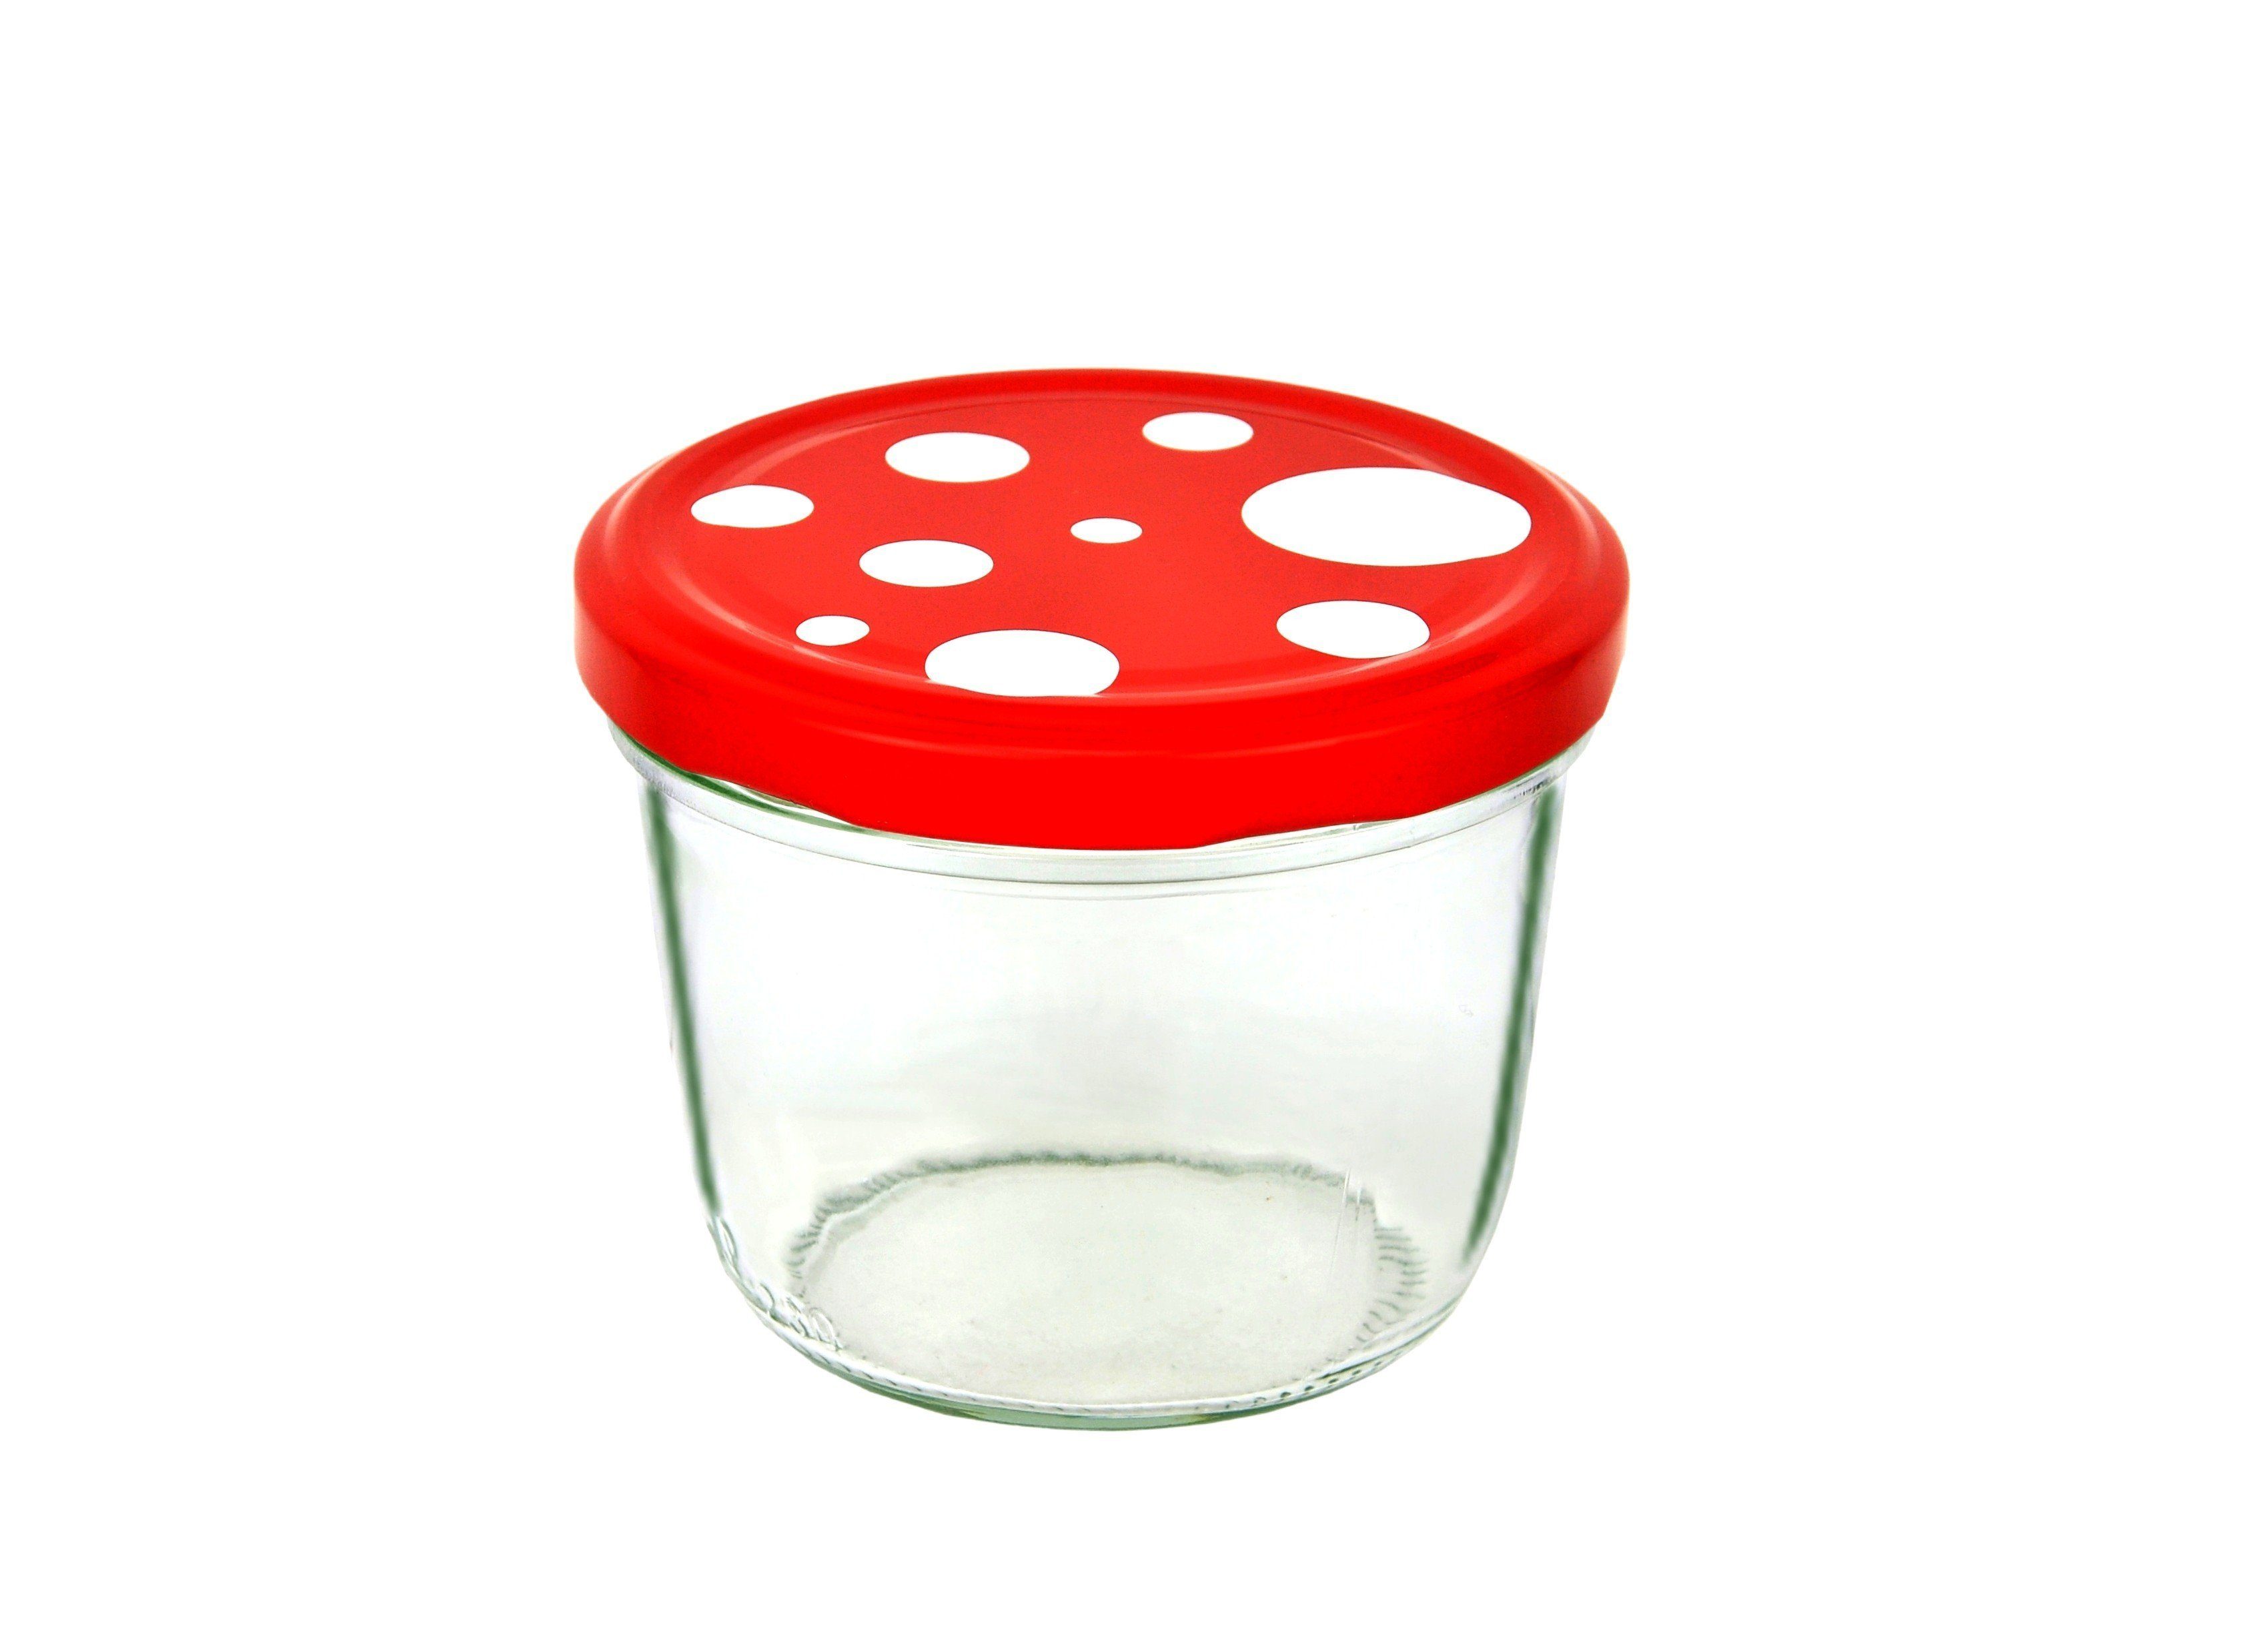 MamboCat To gepunktet, 82 230 weiß Glas 75er Einmachglas rot Fliegenpilz Deckel ml Set Sturzglas